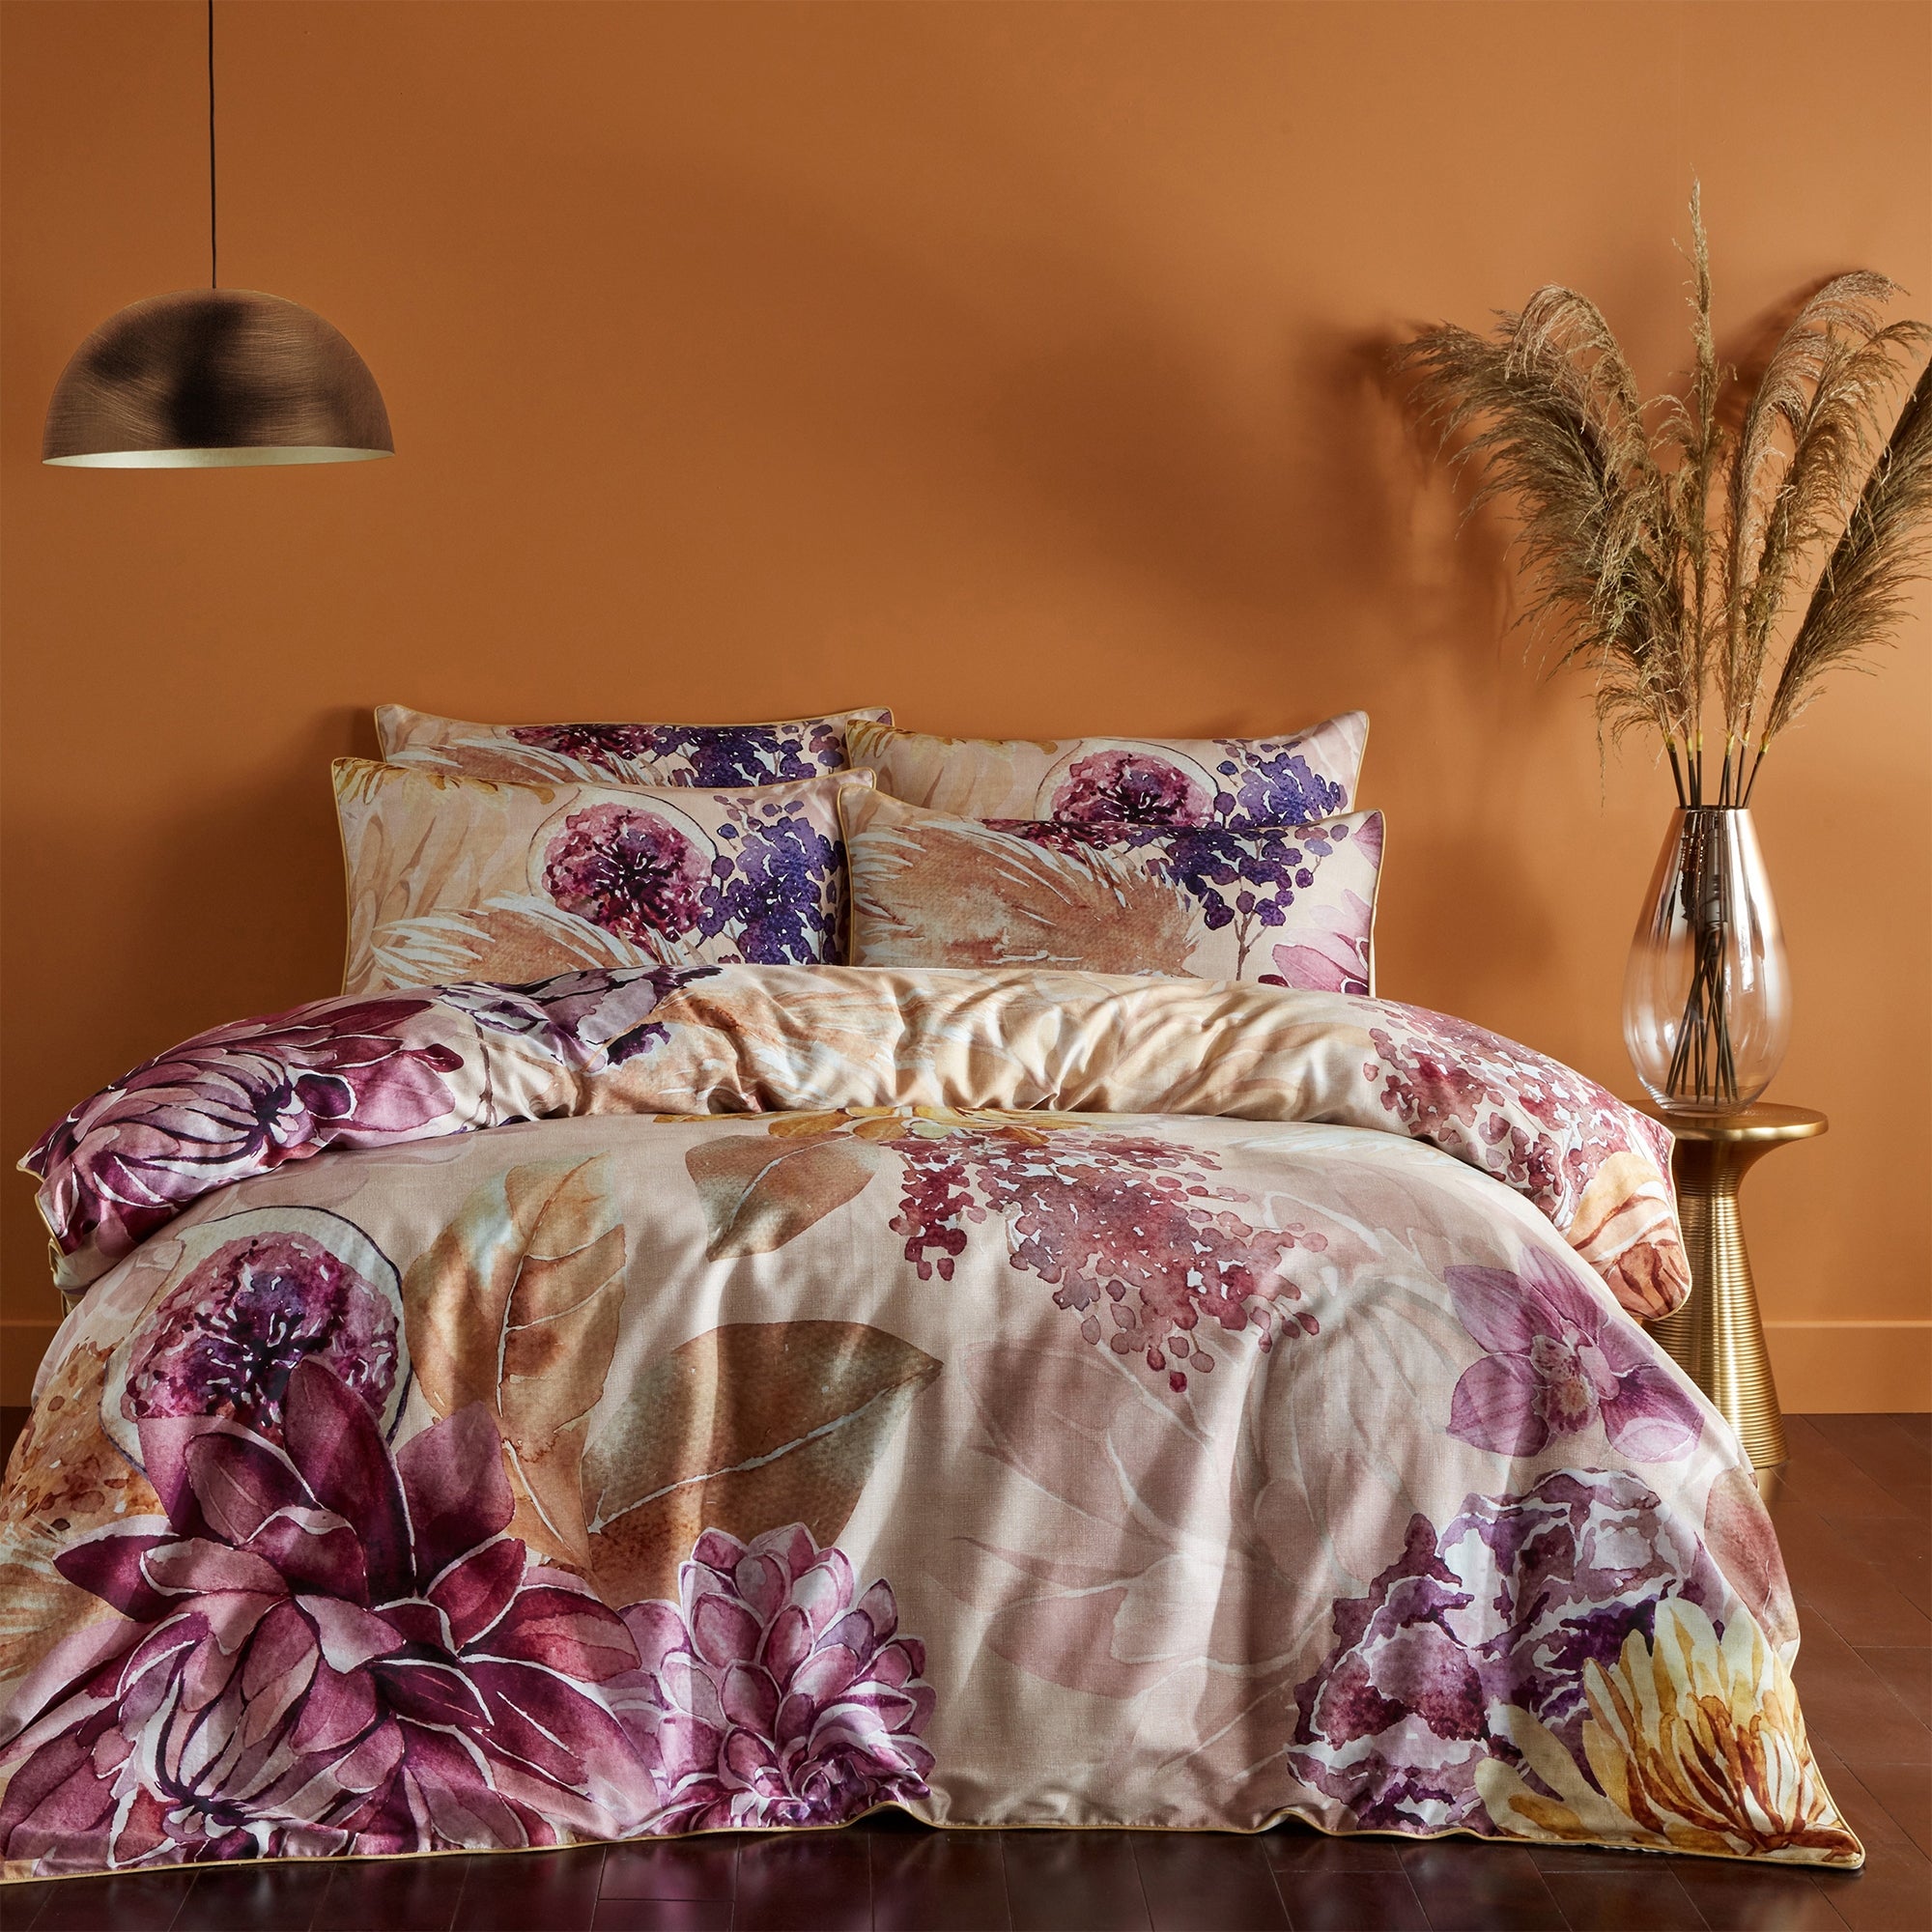 Paoletti Saffa 100% Cotton Duvet Cover and Pillowcase Set Beige/purple